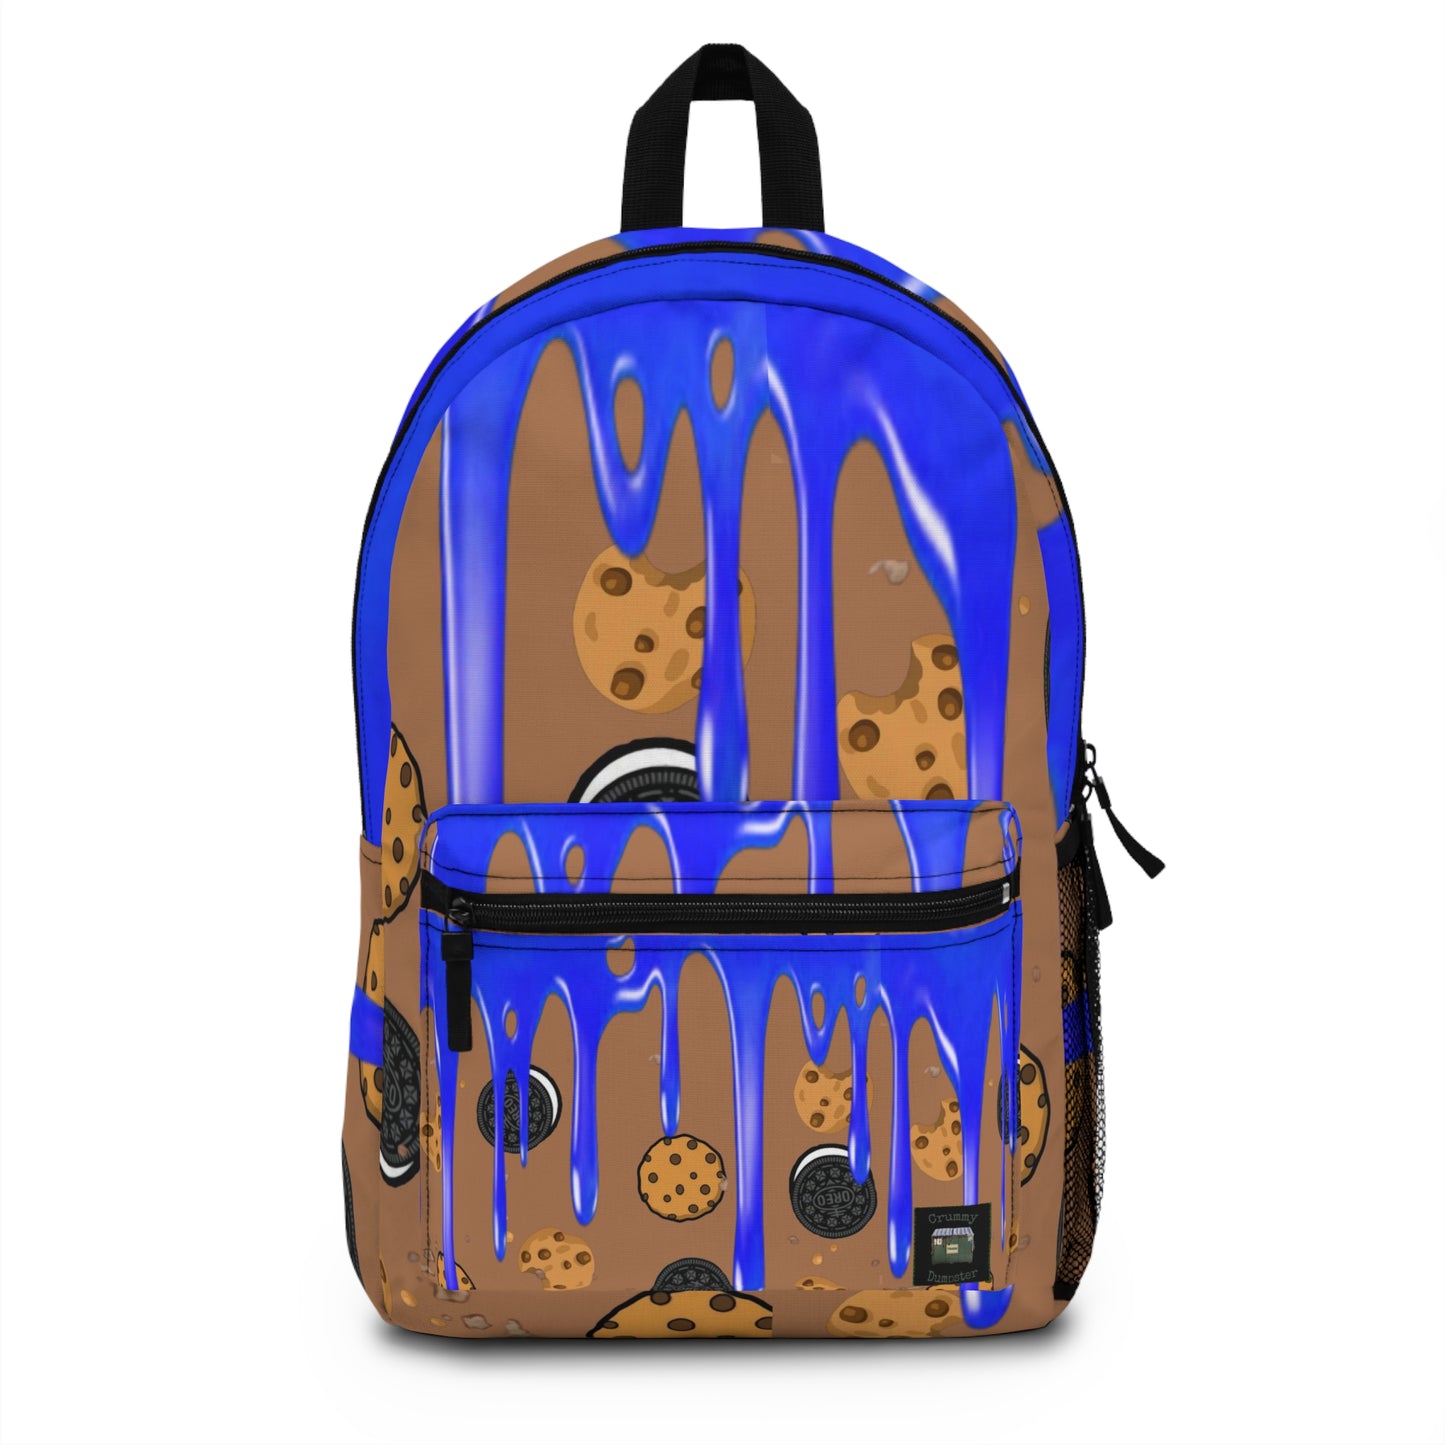 Kookie Munster Backpack